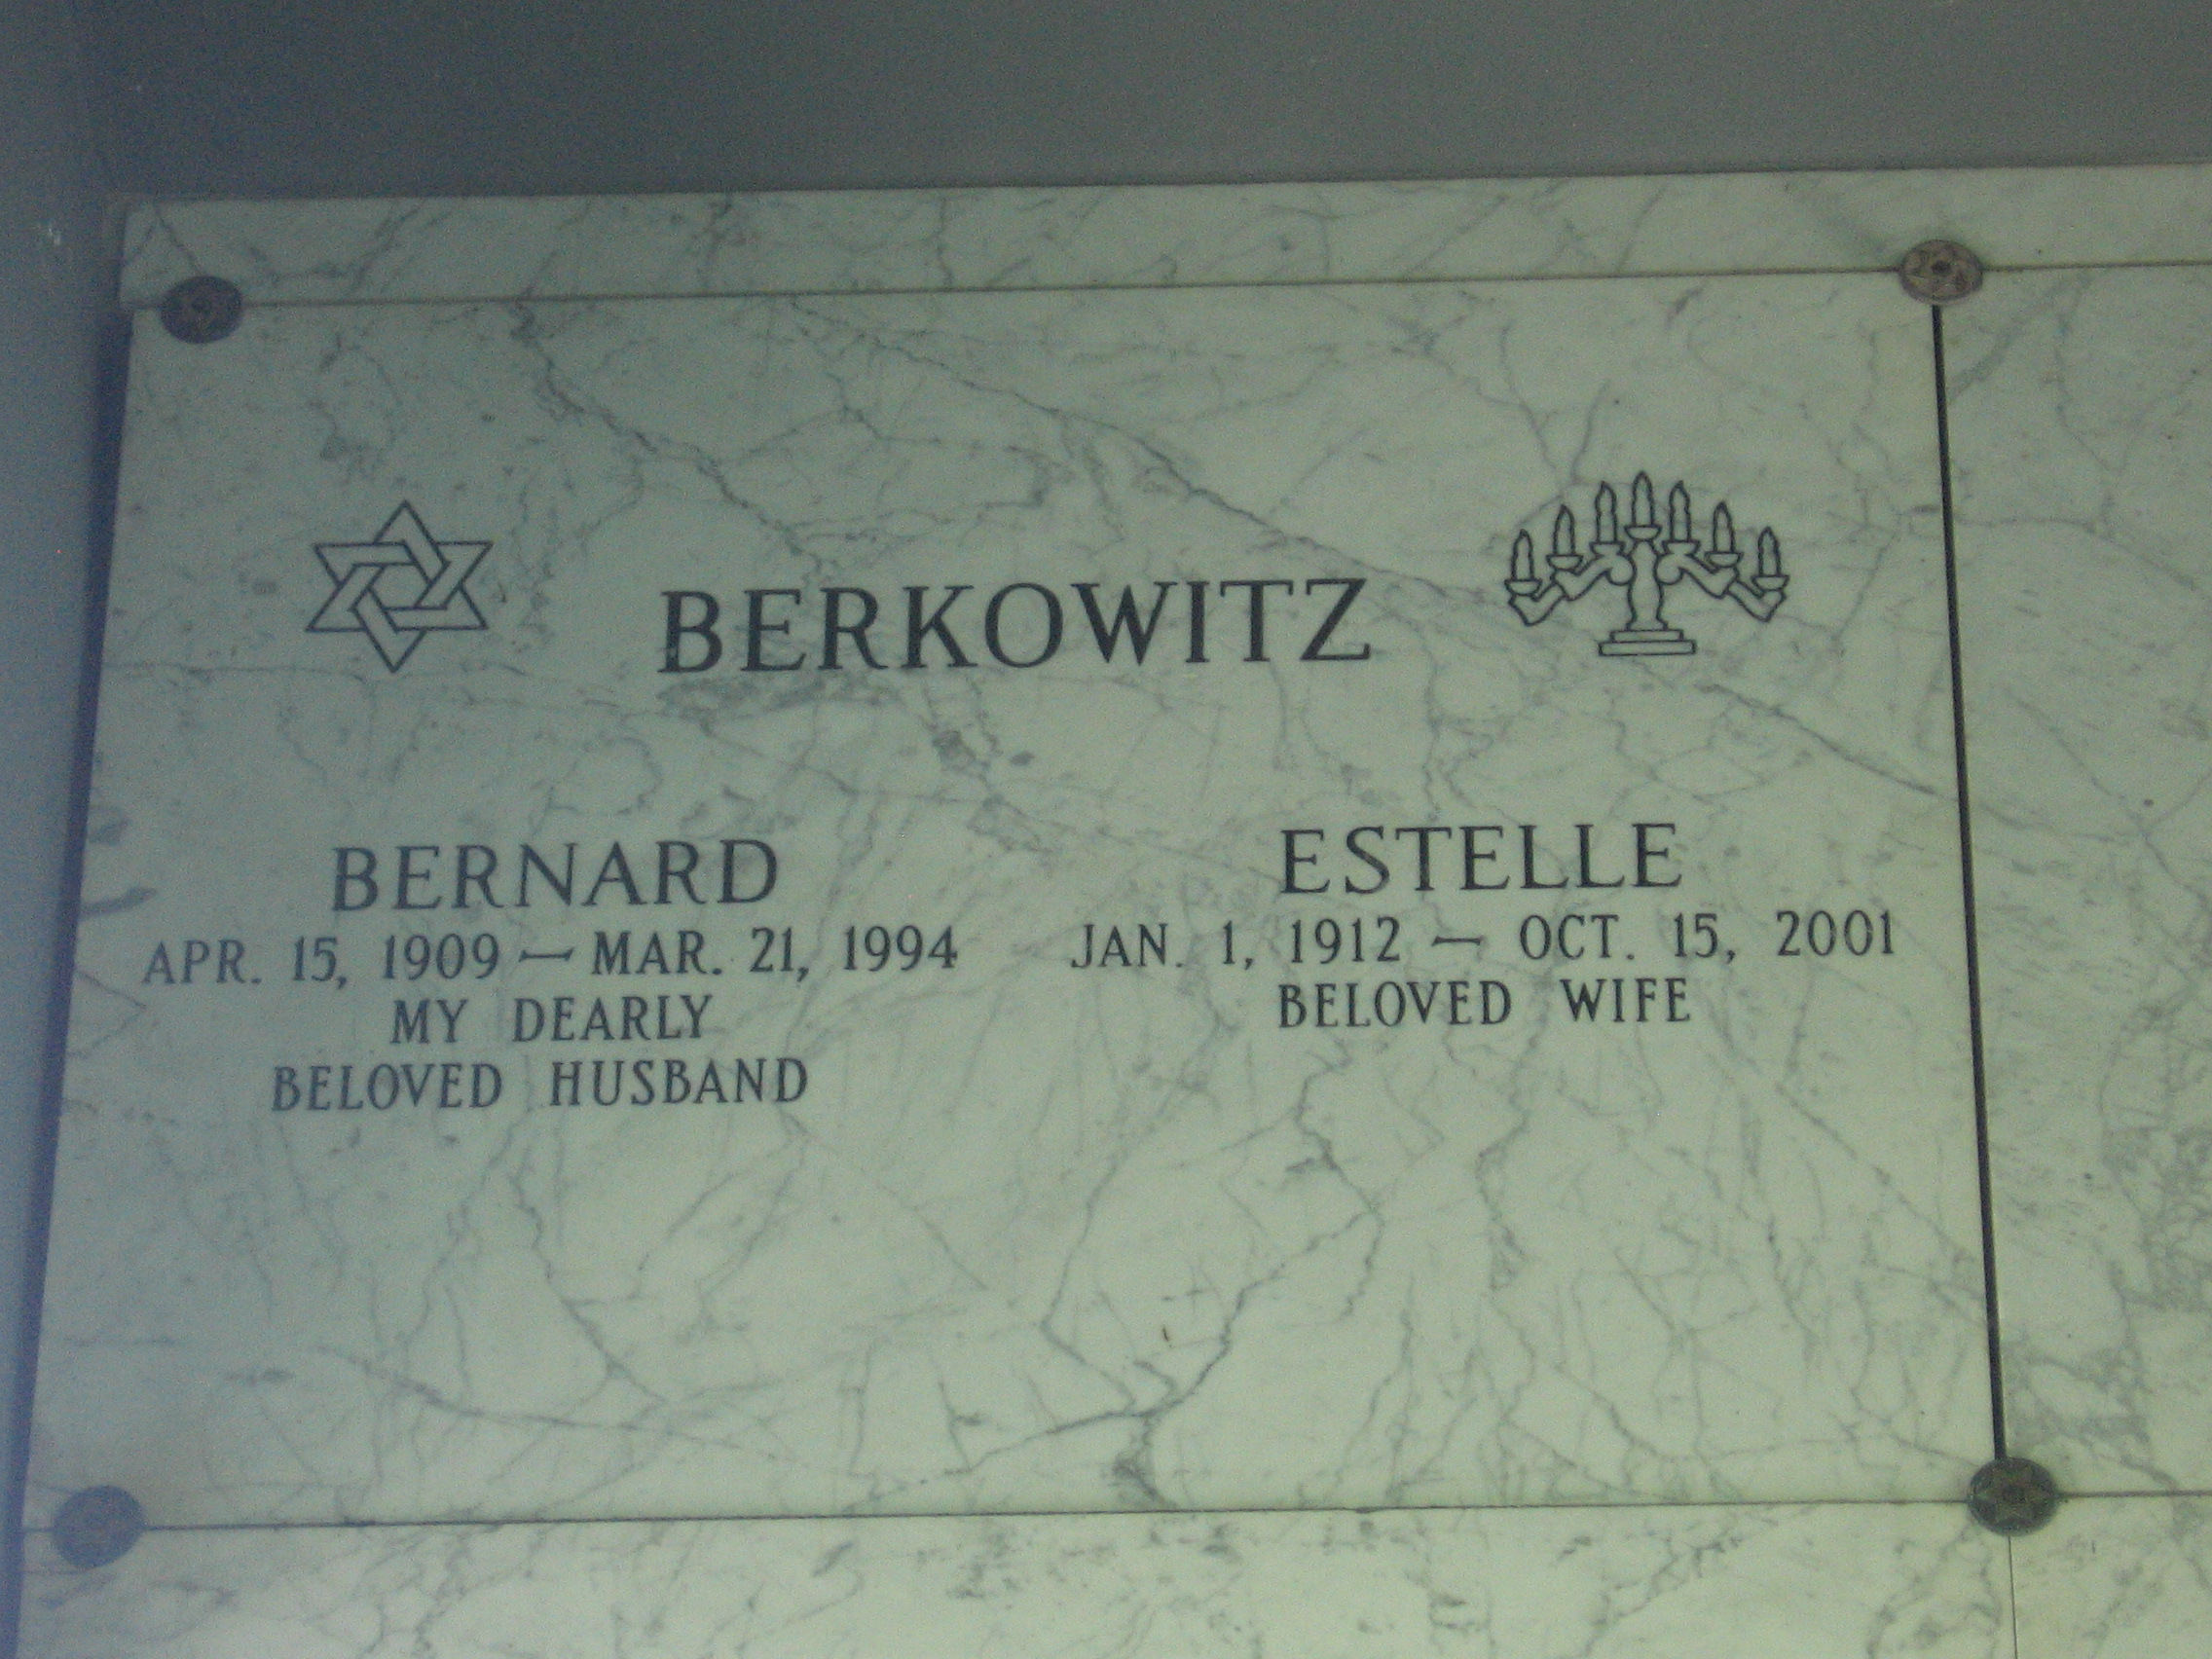 Bernard Berkowitz